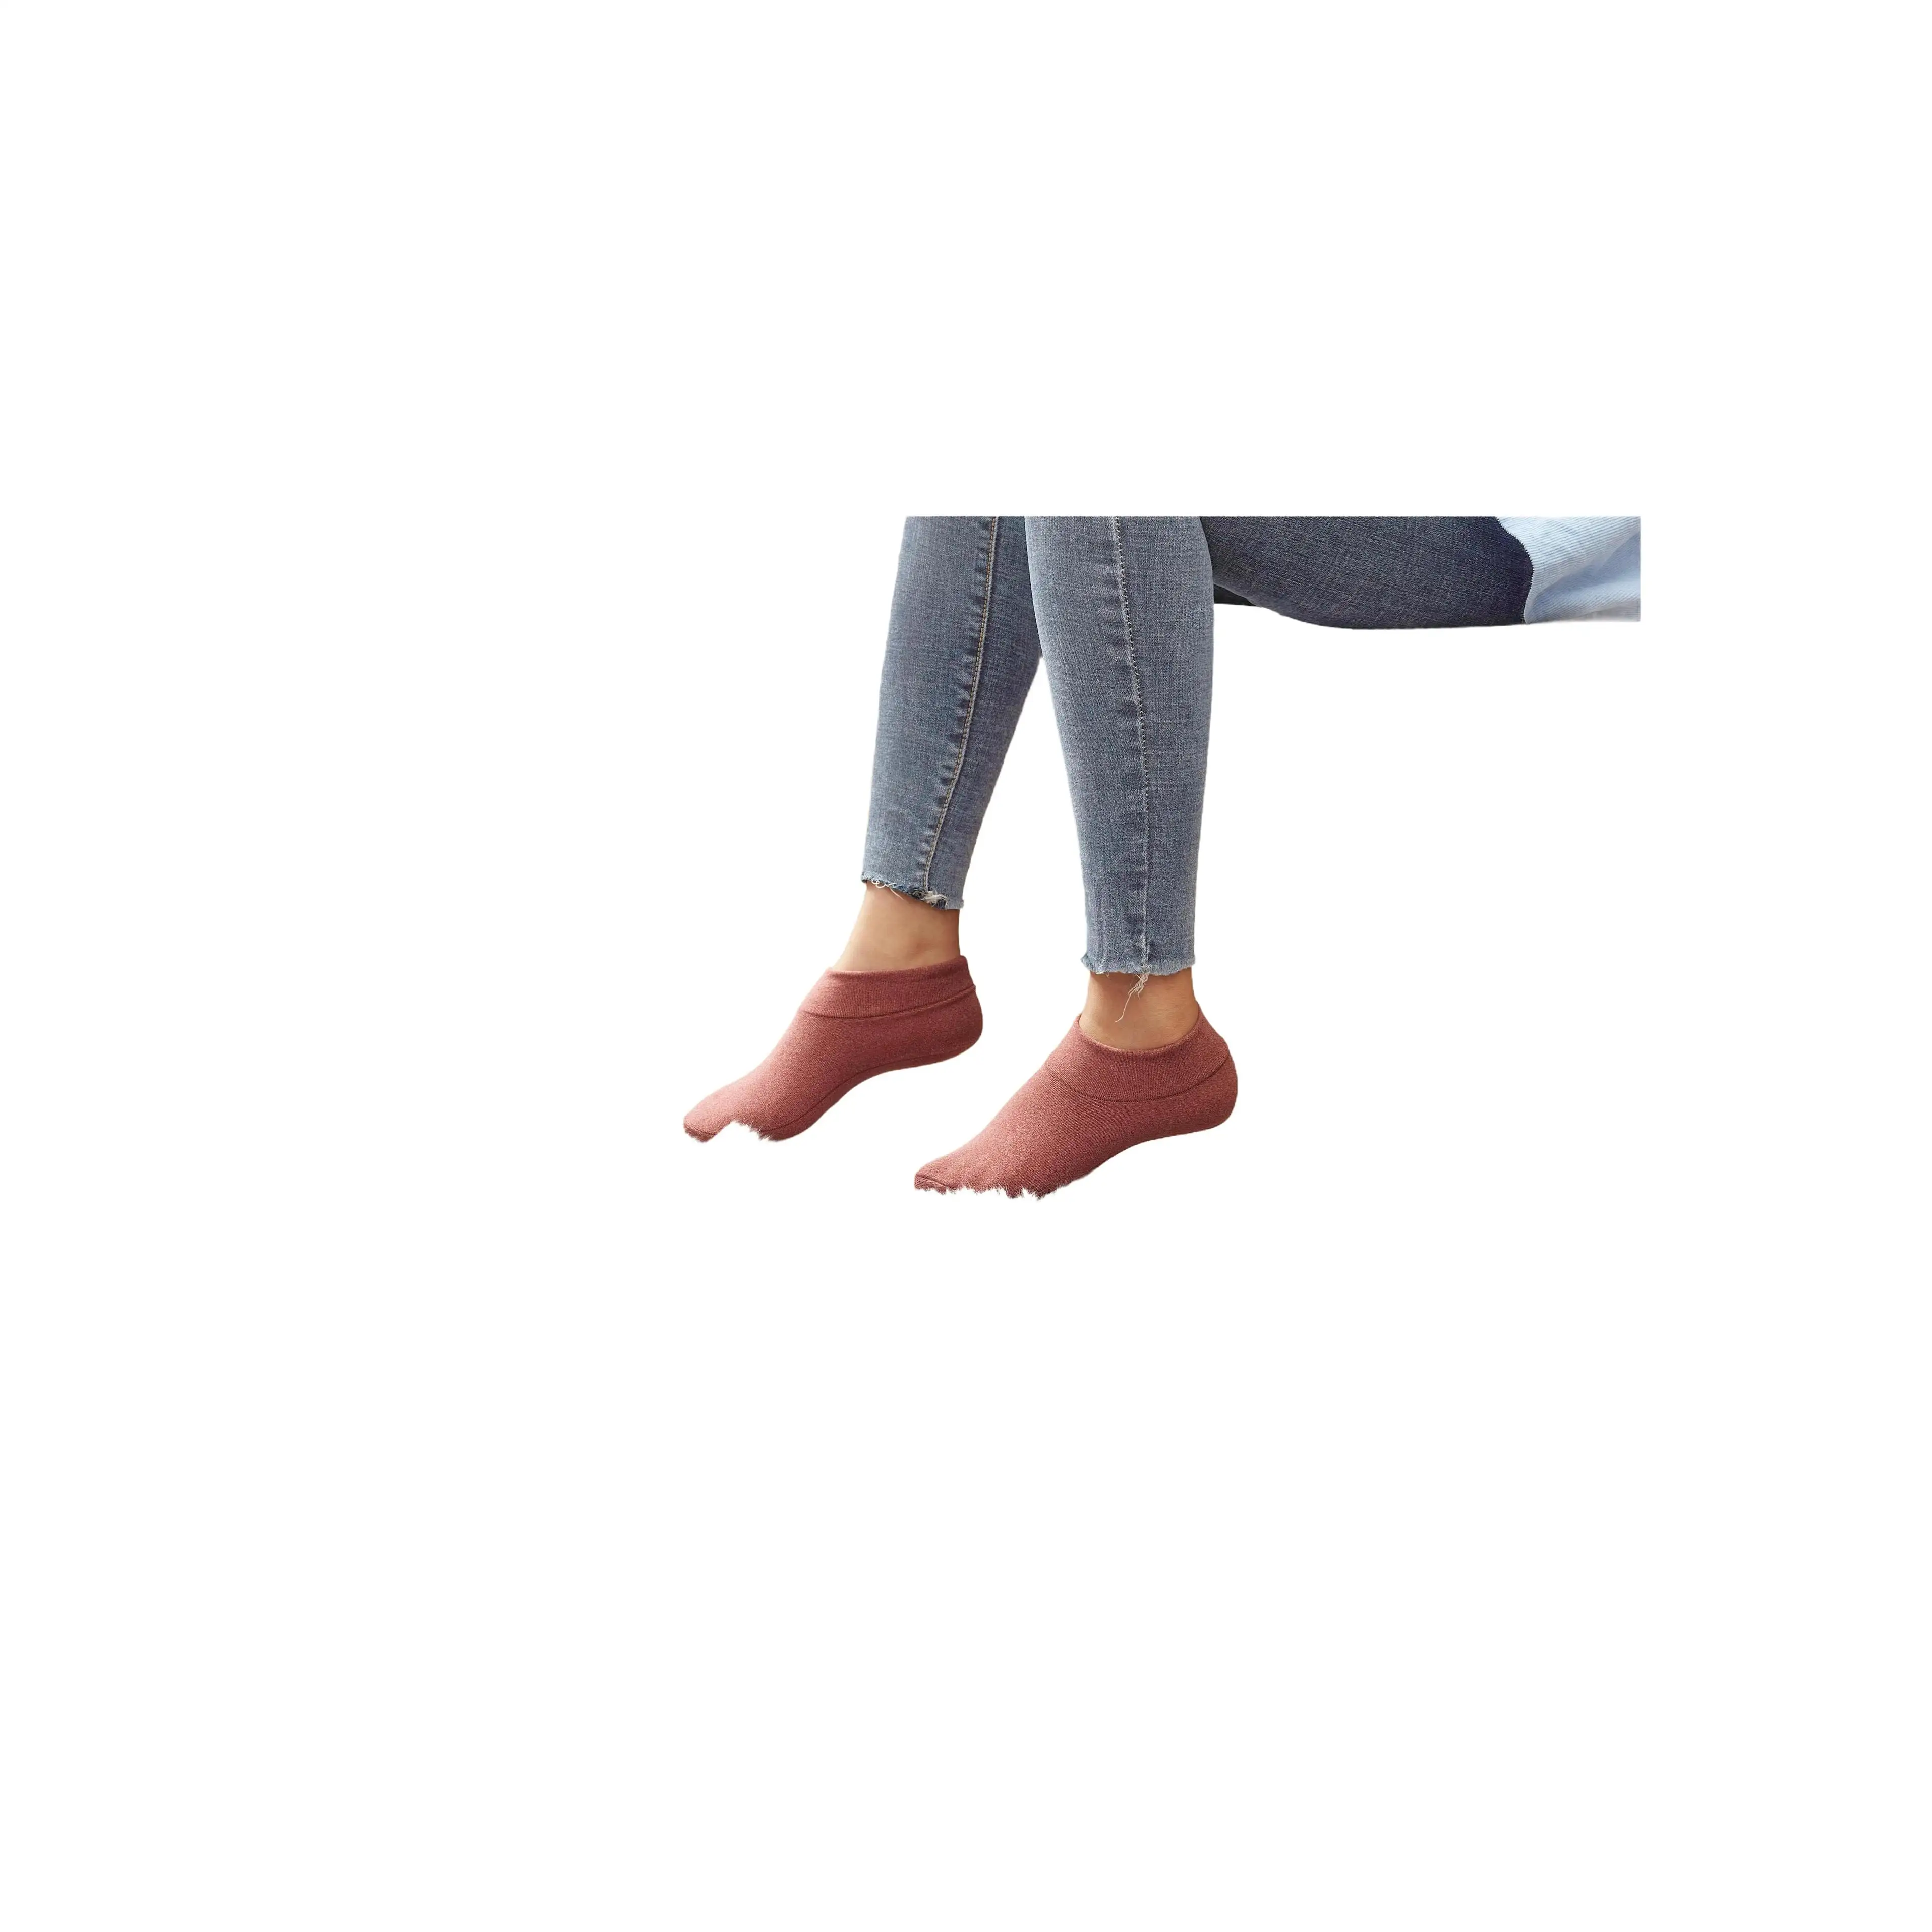 Socks For Women calcetines unisex Summer Short Unisex Teen Tube Girl Over Knee High Color Plus Size Coquette Sock For Girl